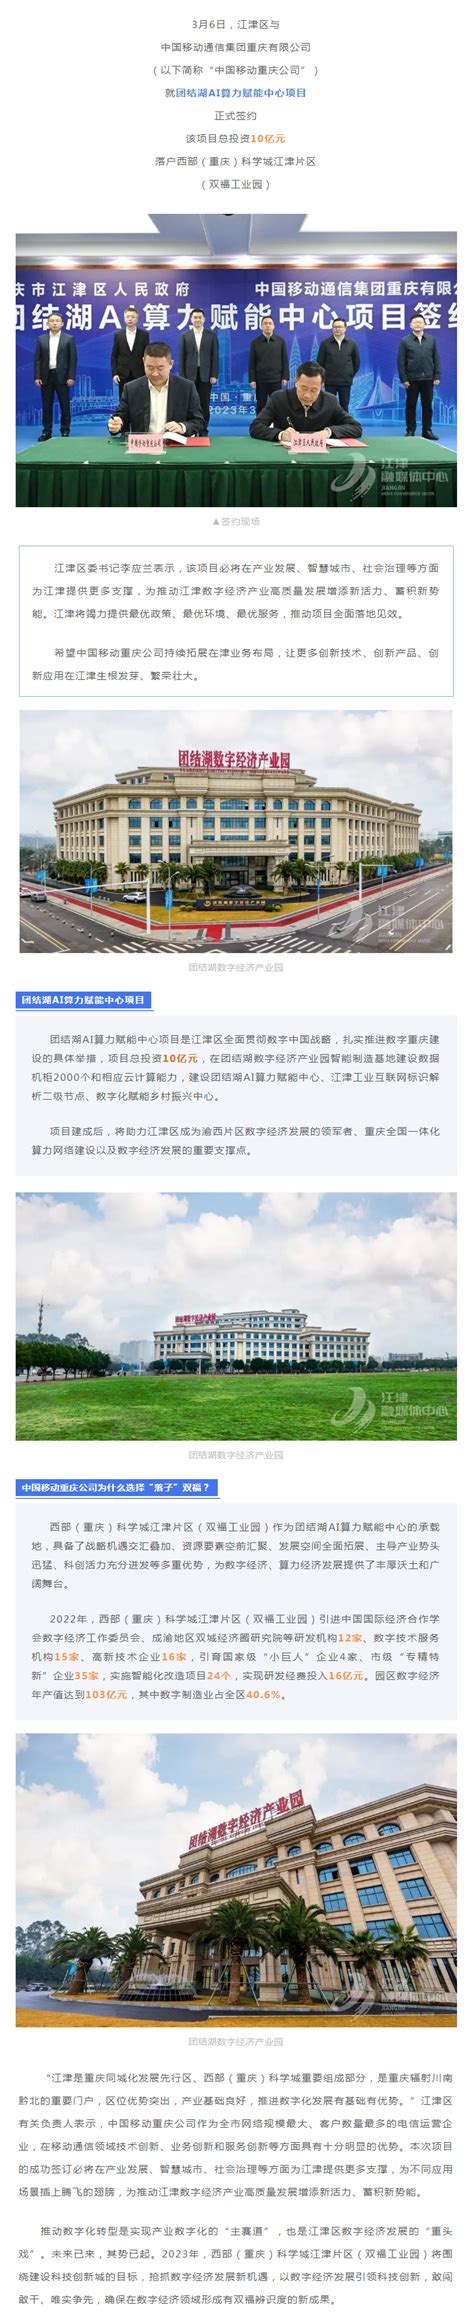 2021重庆双福爱琴海购物公园最新情况及开业时间_旅泊网